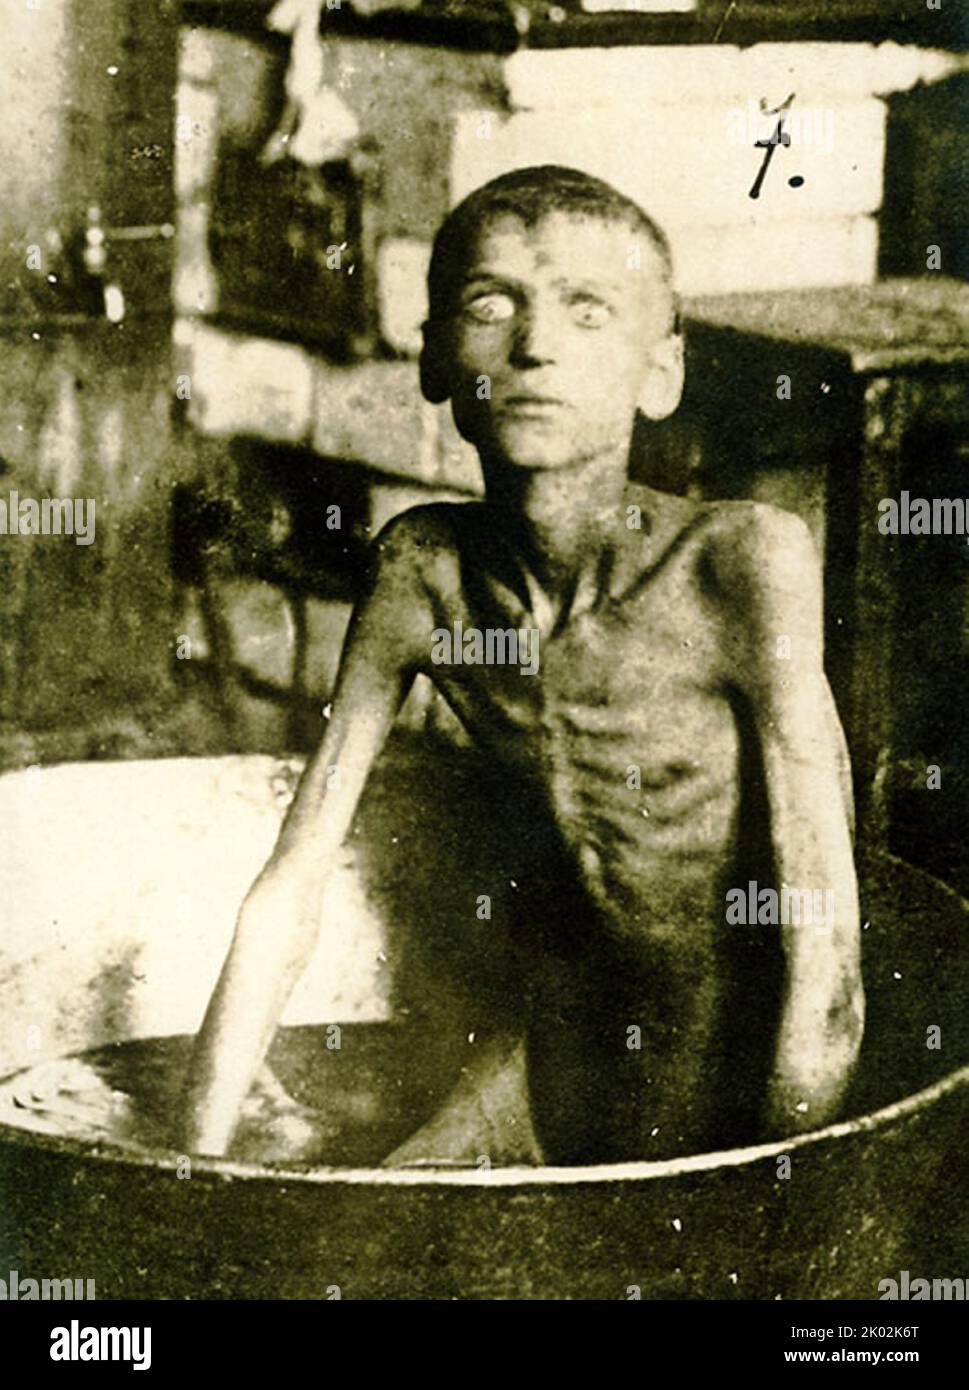 Der Holodomor, Hungersnot-Völkermord in der Ukraine oder der ukrainische Völkermord von 1932-33, war eine Hungersnot in der sowjetischen Ukraine von 1932 bis 1933, bei der Millionen Ukrainer getötet wurden. Als Teil der größeren sowjetischen Hungersnot von 1932-33, die die wichtigsten Getreideanbaugebiete des Landes betraf, starben Millionen von Einwohnern der Ukraine, die meisten davon ethnische Ukrainer, an Hunger in einer in der Geschichte der Ukraine beispiellosen Friedenskatastrophe. Stockfoto